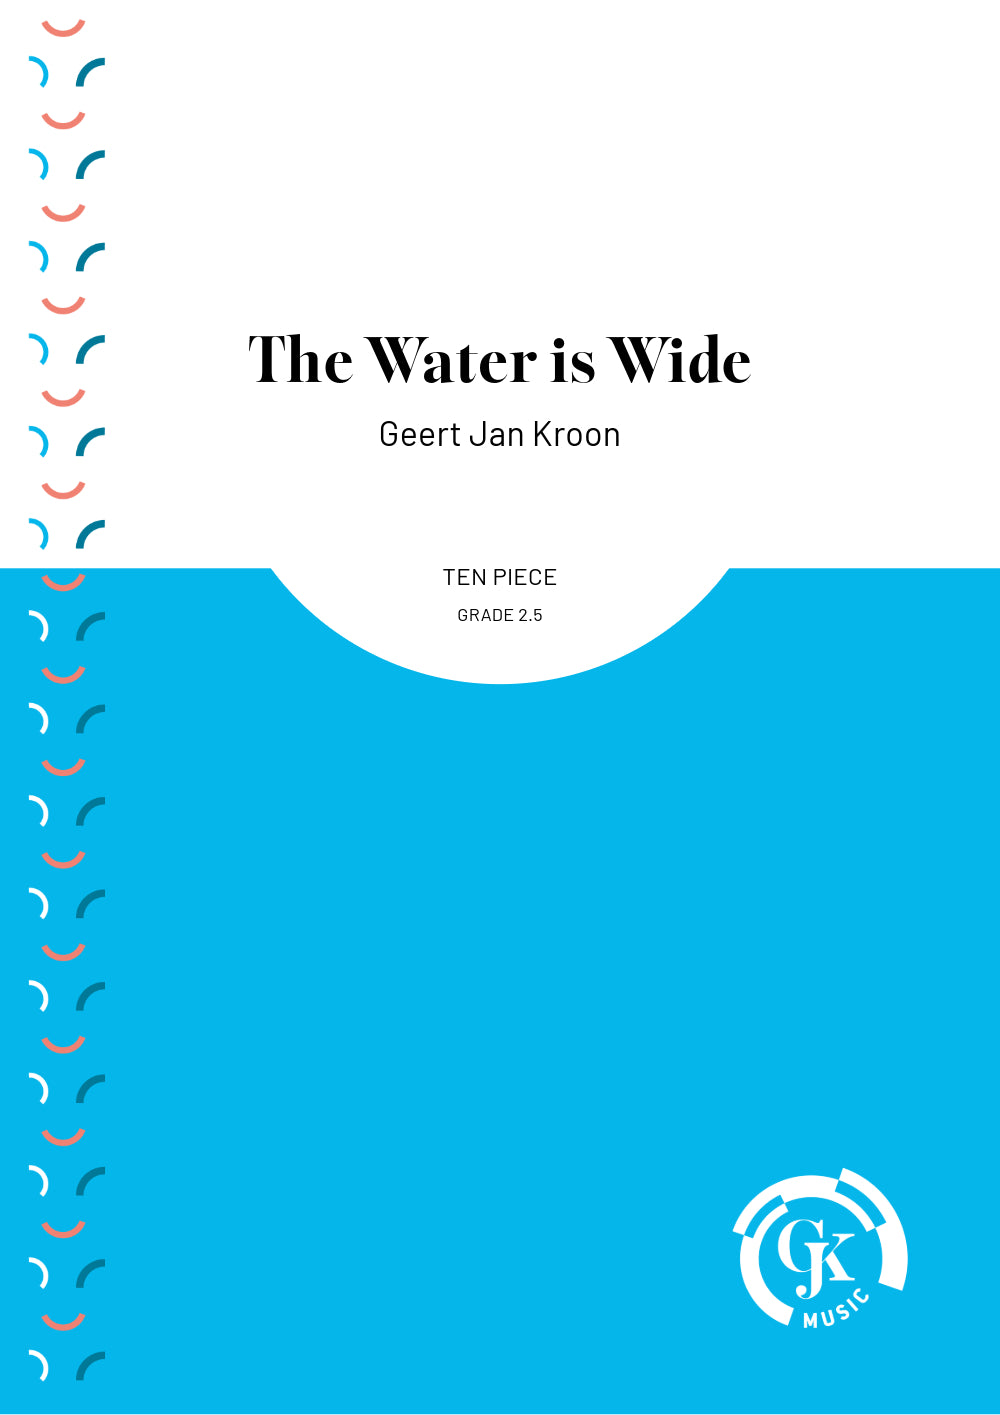 The Water is Wide - Ten Piece